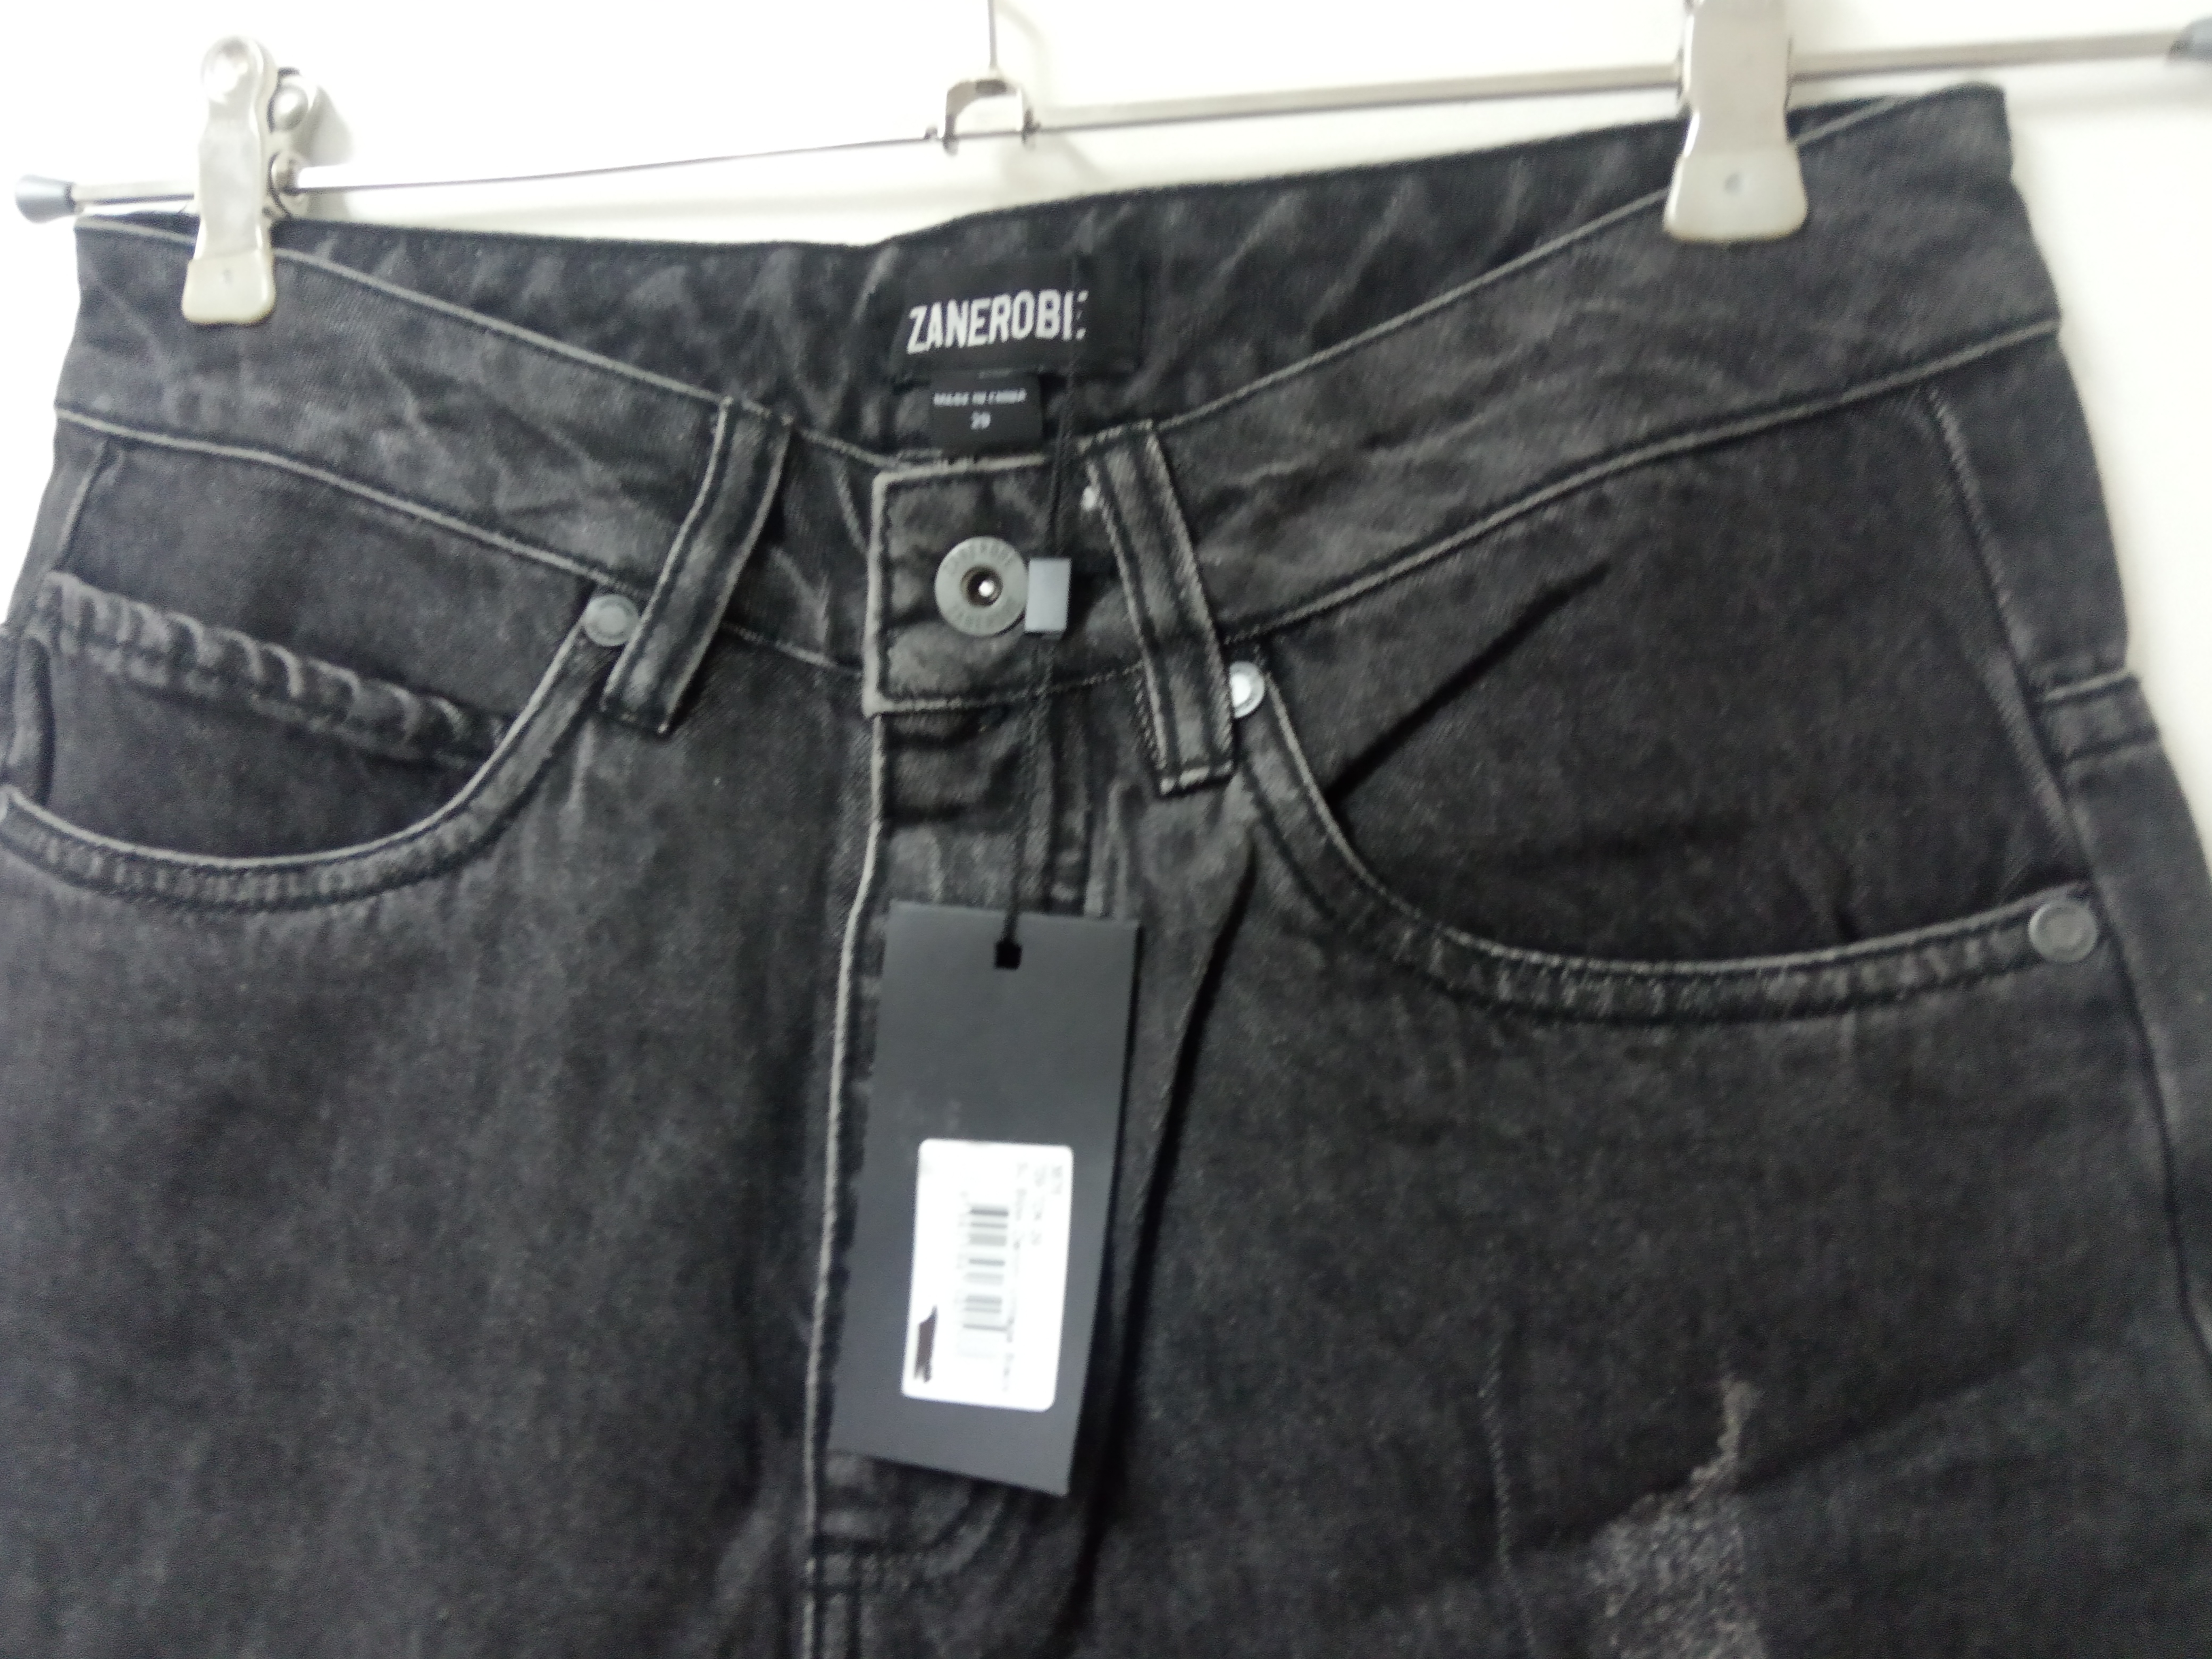 תמונה 5 ,ג'ינס zanrobe מידה 29 למכירה בתל אביב  ביגוד ואביזרים  ג'ינסים ומכנסיים